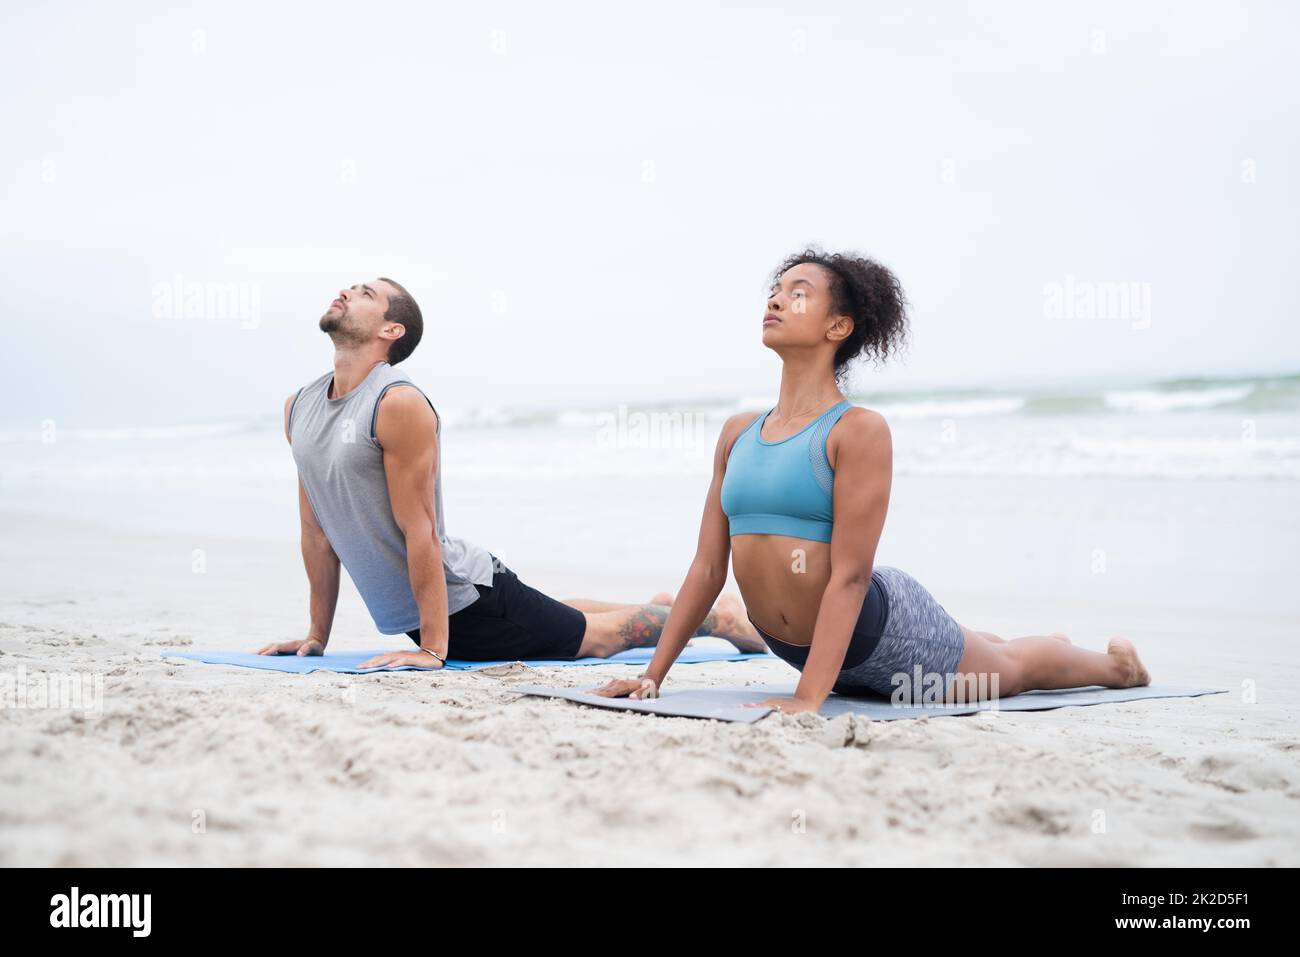 Lassen Sie alle Ihre Sinne ein Gefühl der Ruhe spüren. Aufnahme eines jungen Mannes und einer jungen Frau, die gemeinsam am Strand Yoga praktizieren. Stockfoto